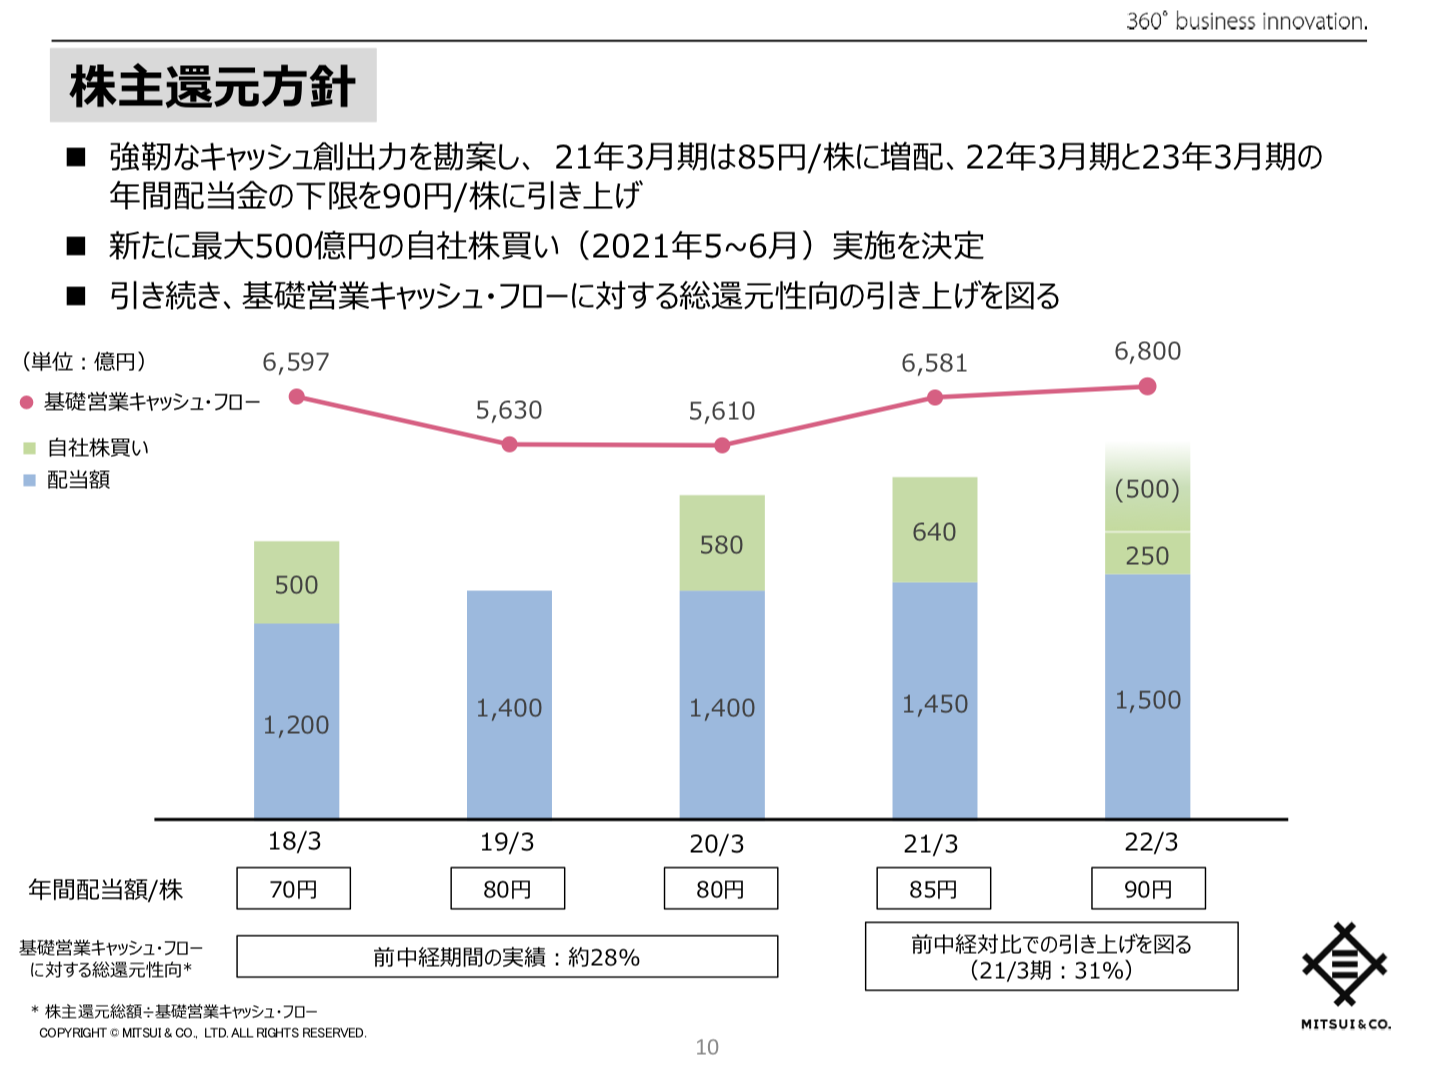 三井物産株式会社 中期経営計画2023の進捗 及び 2022年3月期事業計画 ~変革と成長~ 新たなステージに向けたコミットメント